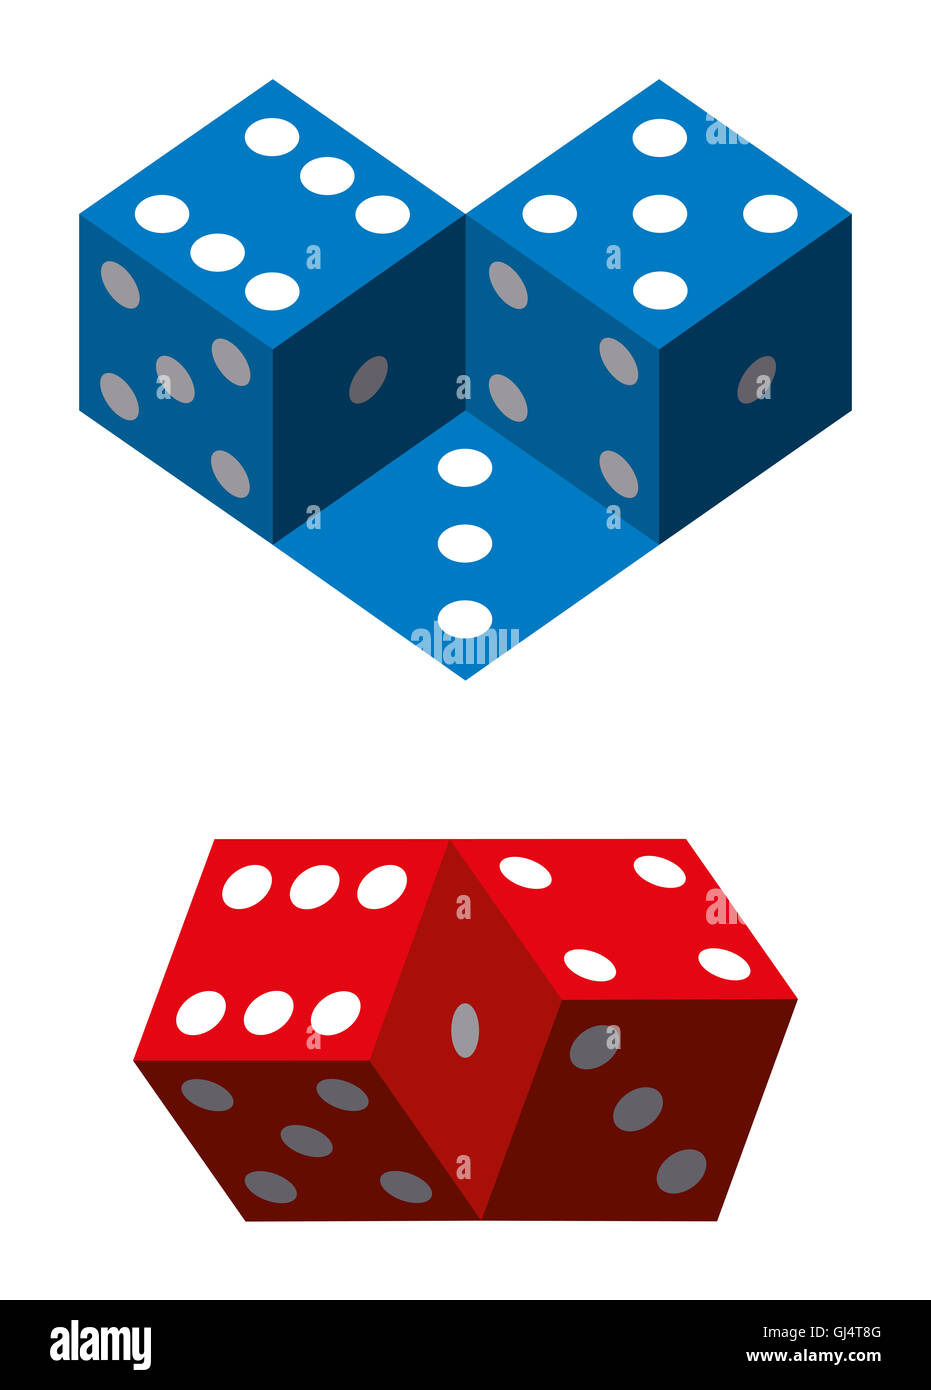 Illusioni Ottiche con dadi. Illusione geometrica con il blu e il rosso a dadini. Immagine su sfondo bianco. Foto Stock